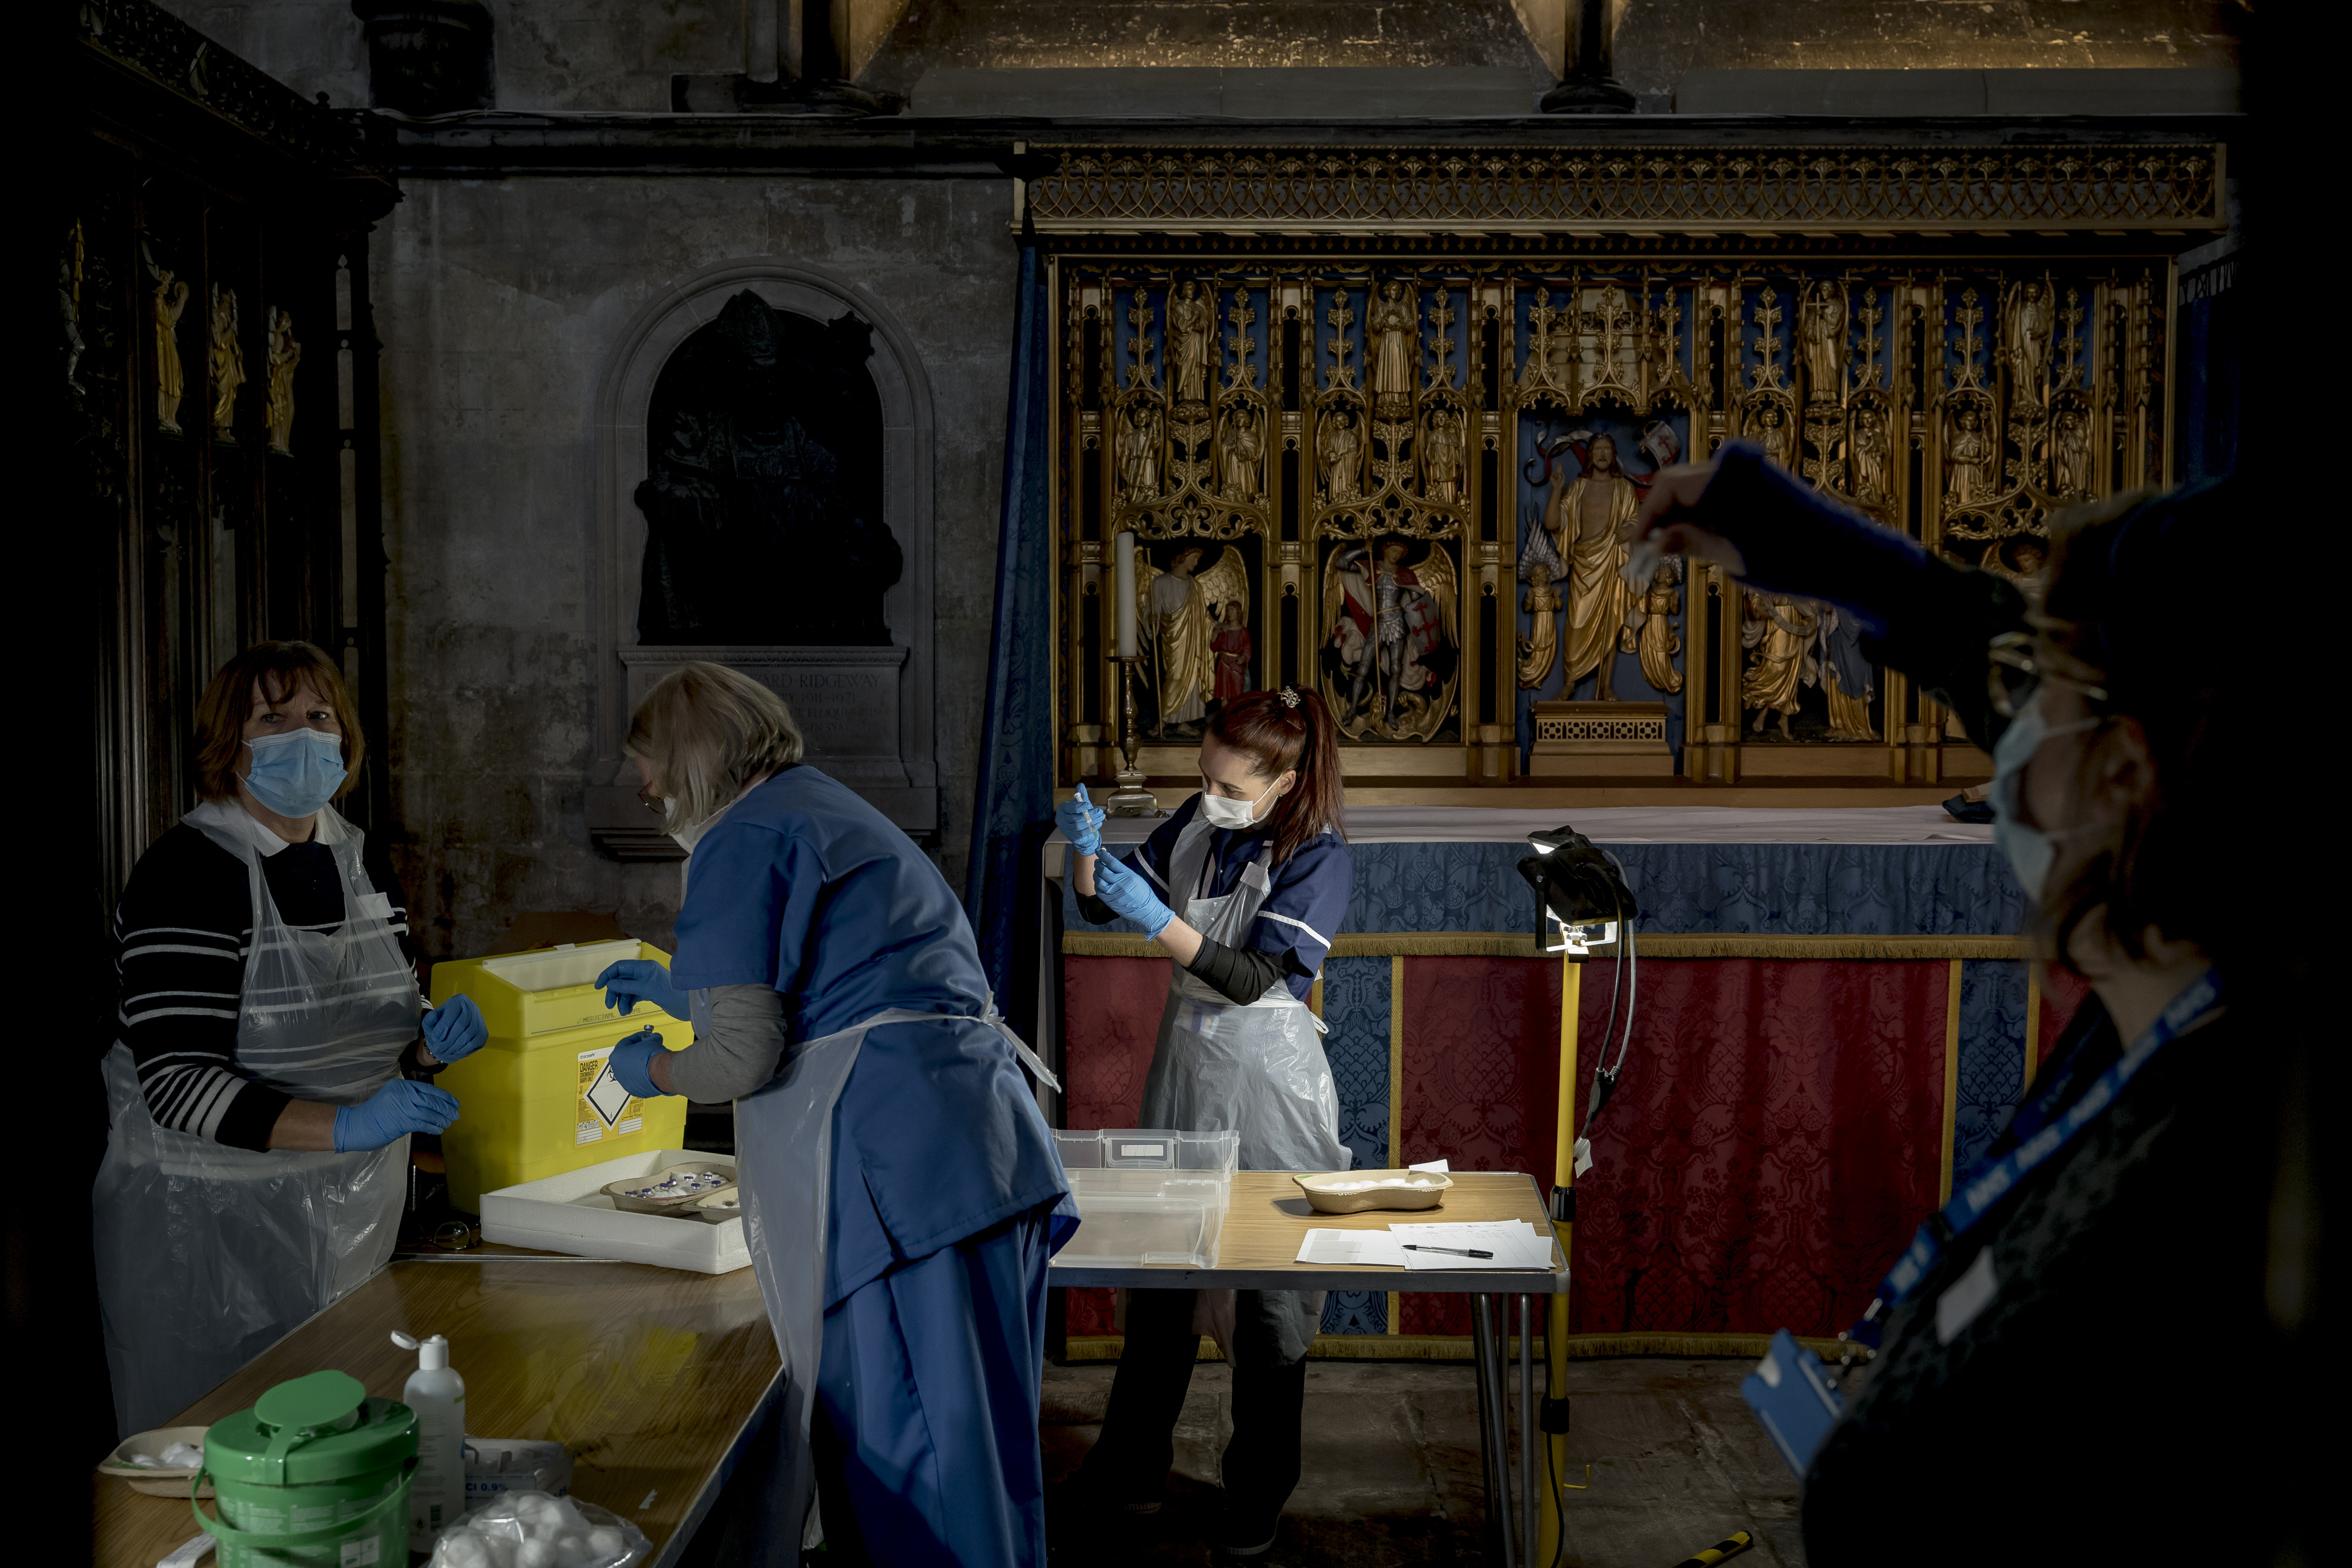 Una clínica de vacunación contra el covid-19 en una catedral de Salisbury, Inglaterra, el 23 de enero de 2021. La vacunación reduce a la mitad las probabilidades de experimentar síntomas a largo plazo tras la infección de covid. (Foto Prensa Libre: Andrew Testa/The New York Times)